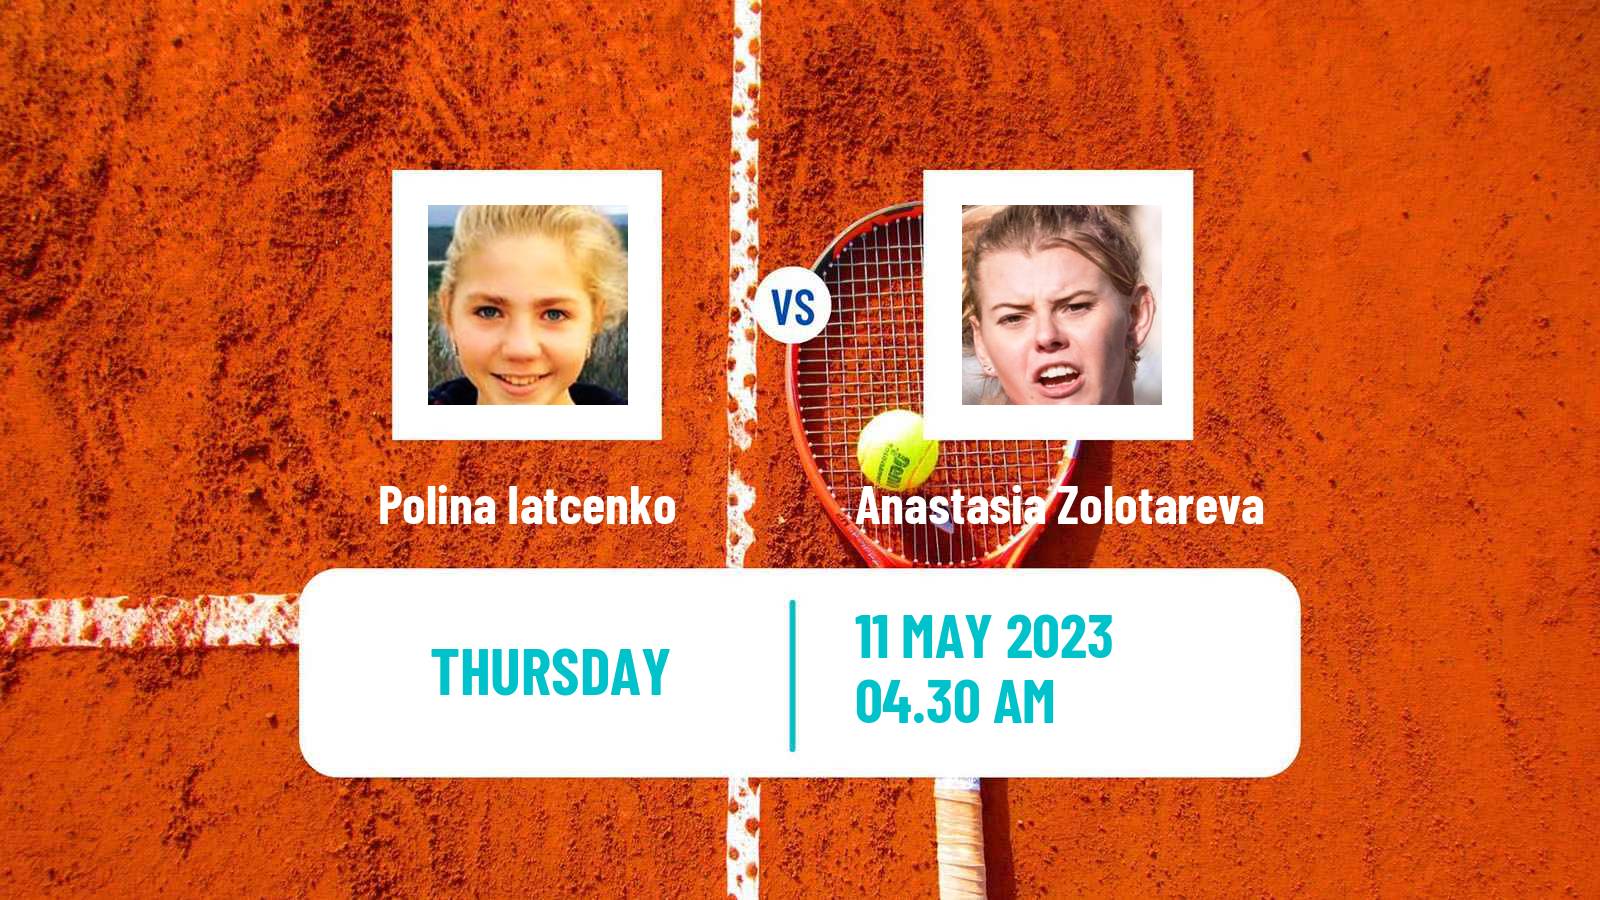 Tennis ITF Tournaments Polina Iatcenko - Anastasia Zolotareva